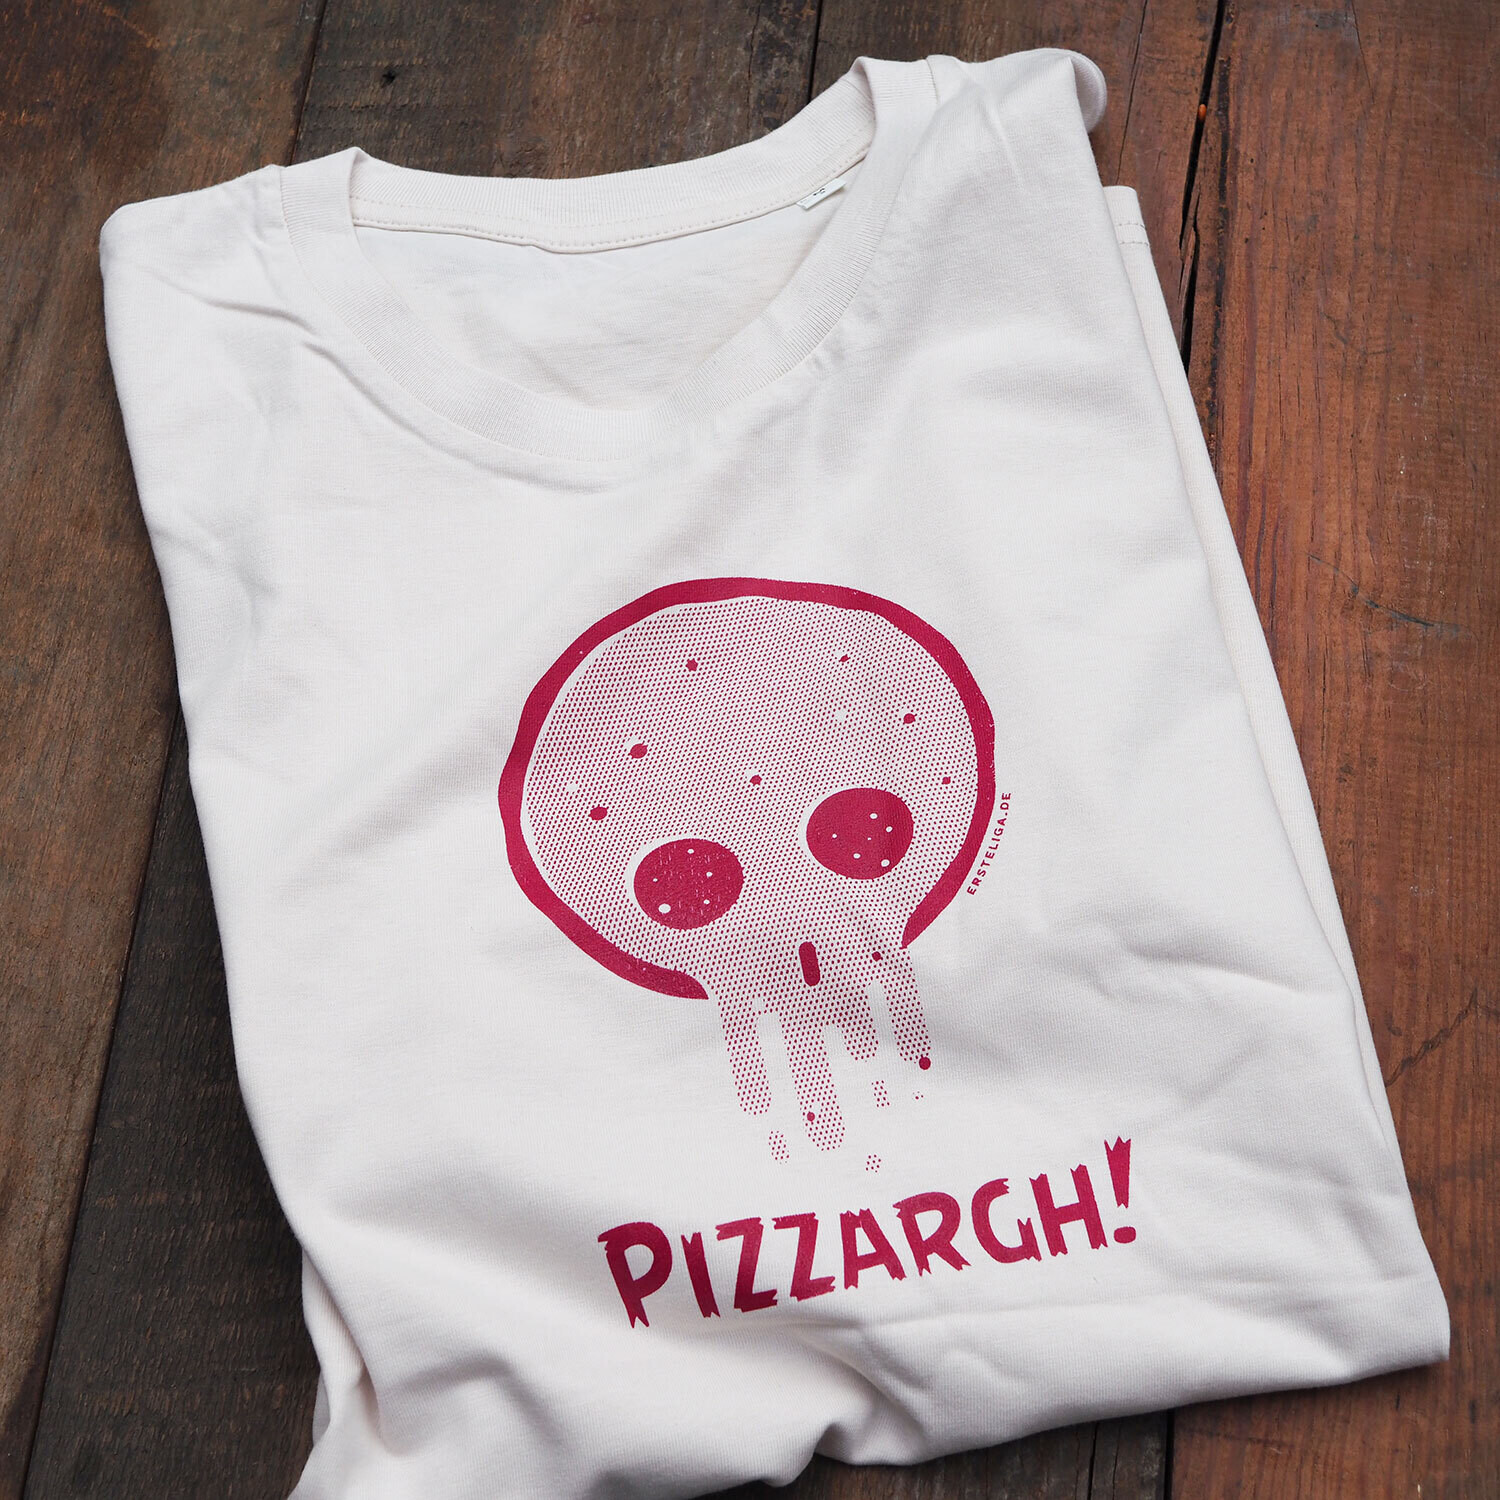 Pizzargh! Shirt